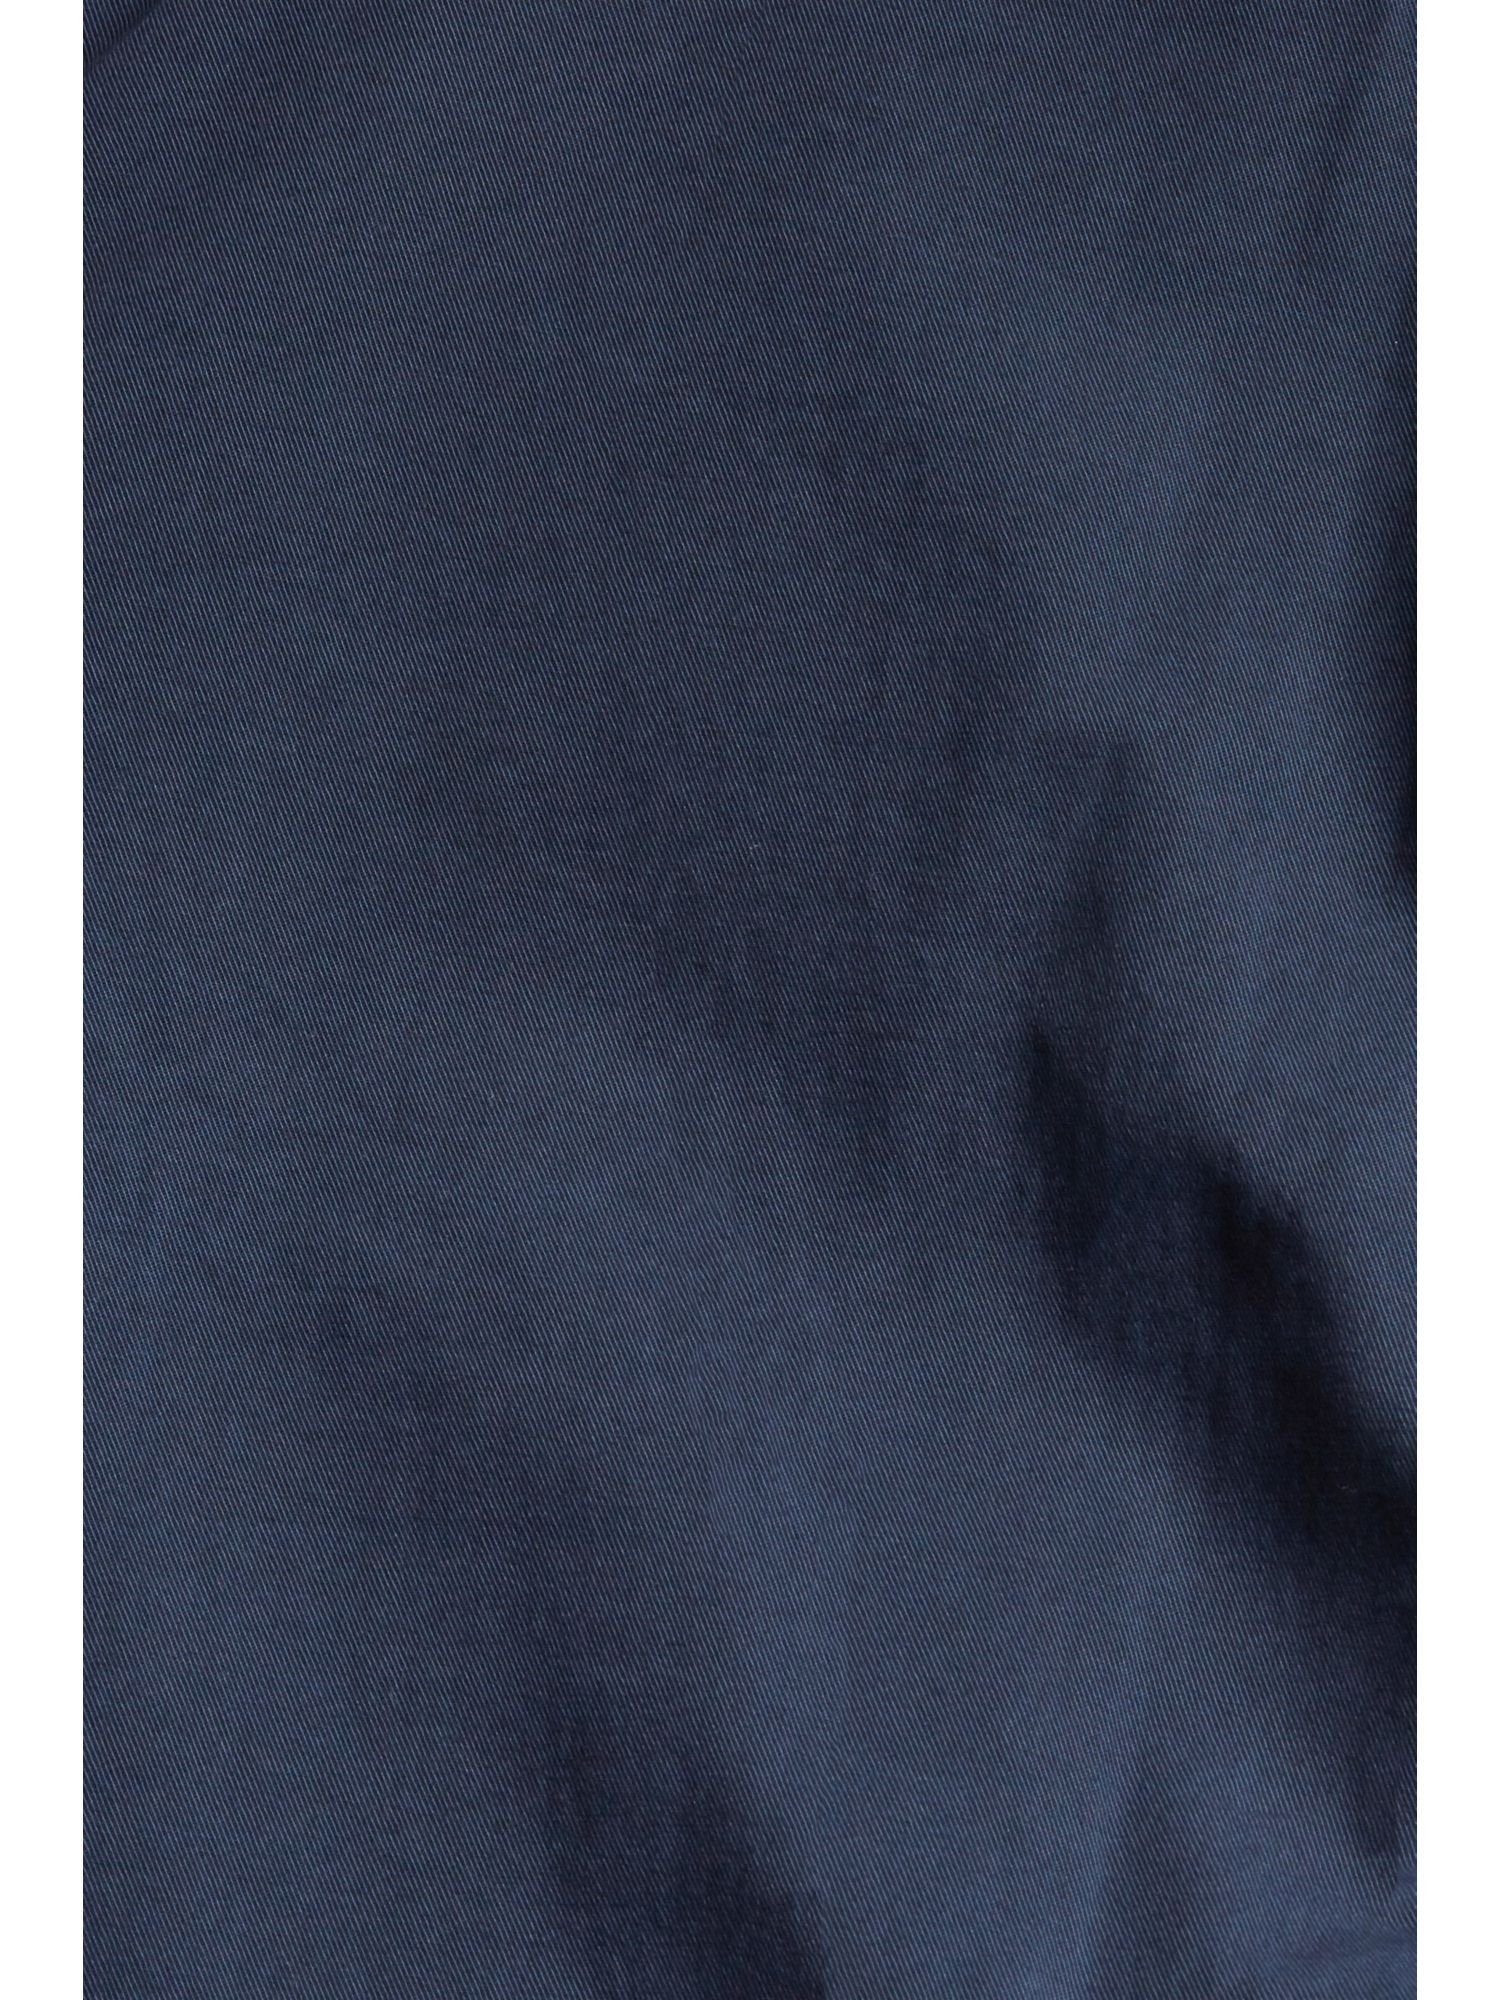 Esprit 7/8-Hose Hose mit dekorativen Taschen NAVY